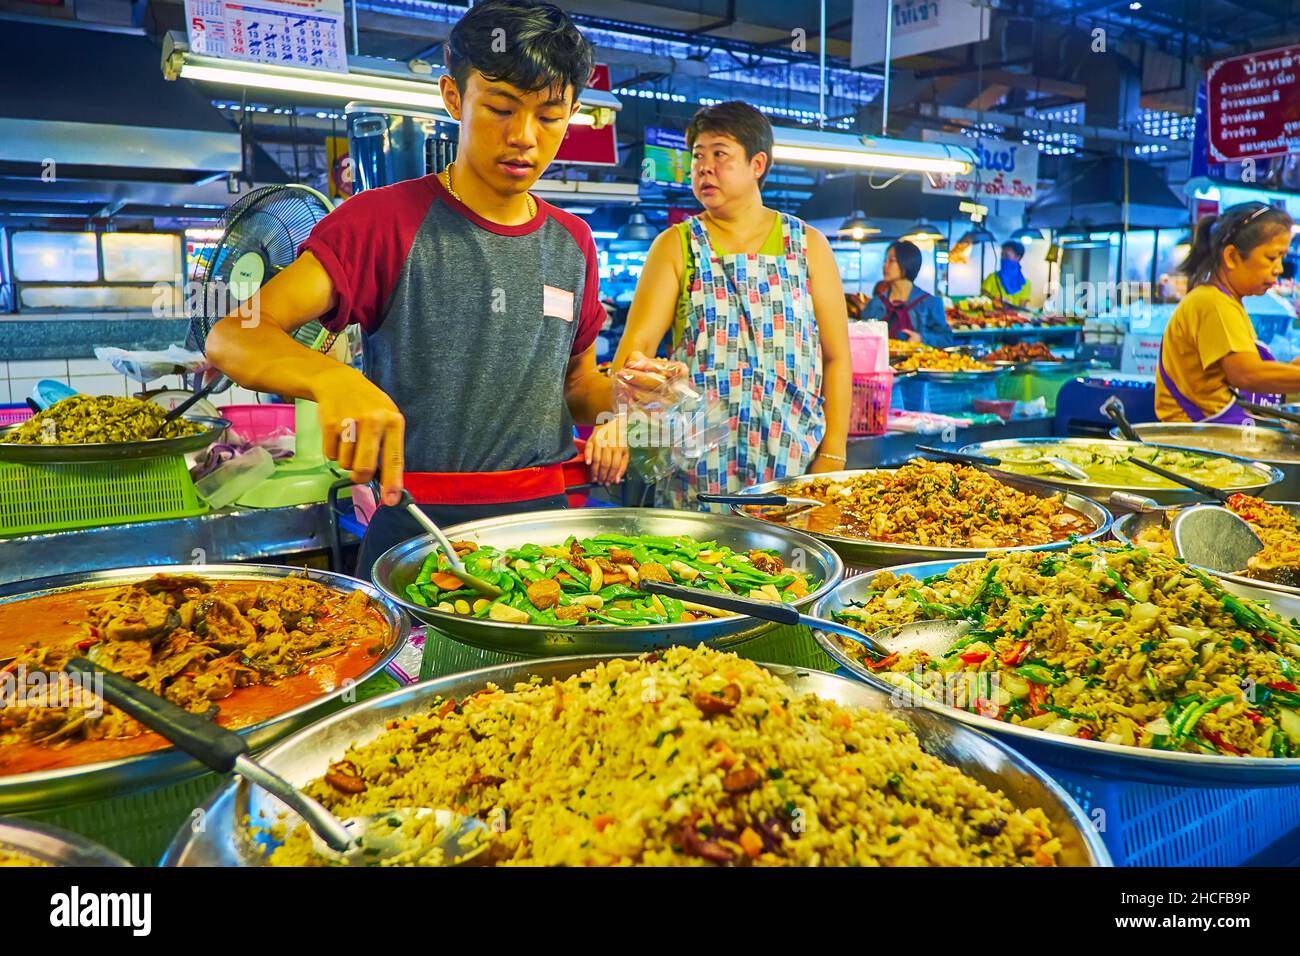 CHIANG MAI, THAILAND - 4. MAI 2019: Tanin Market Stand mit großen Pfannen, gefüllt mit verschiedenen thailändischen Gerichten mit Gemüse, Bohnen, Huhn, Fisch und Reis Stockfoto